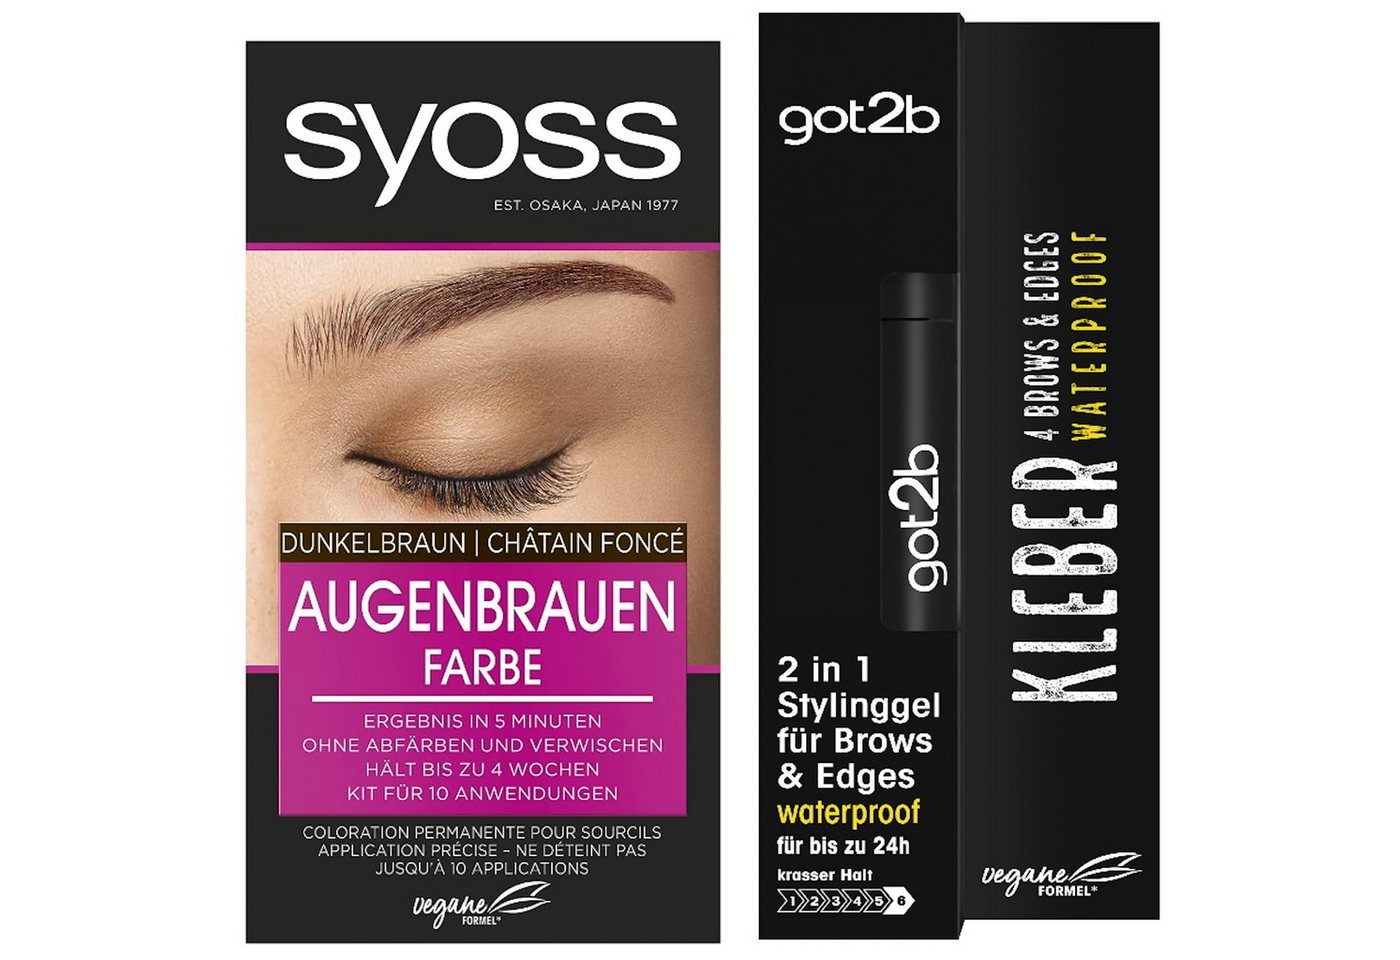 Syoss Augenbrauenfarbe Dunkelbraun 17ml & GOT2B 2in1 Stylinggel 4 Brows & Edges 16ml, 2-tlg., langanhaltend, schweiß- & wasserfest bis zu 24h von Syoss